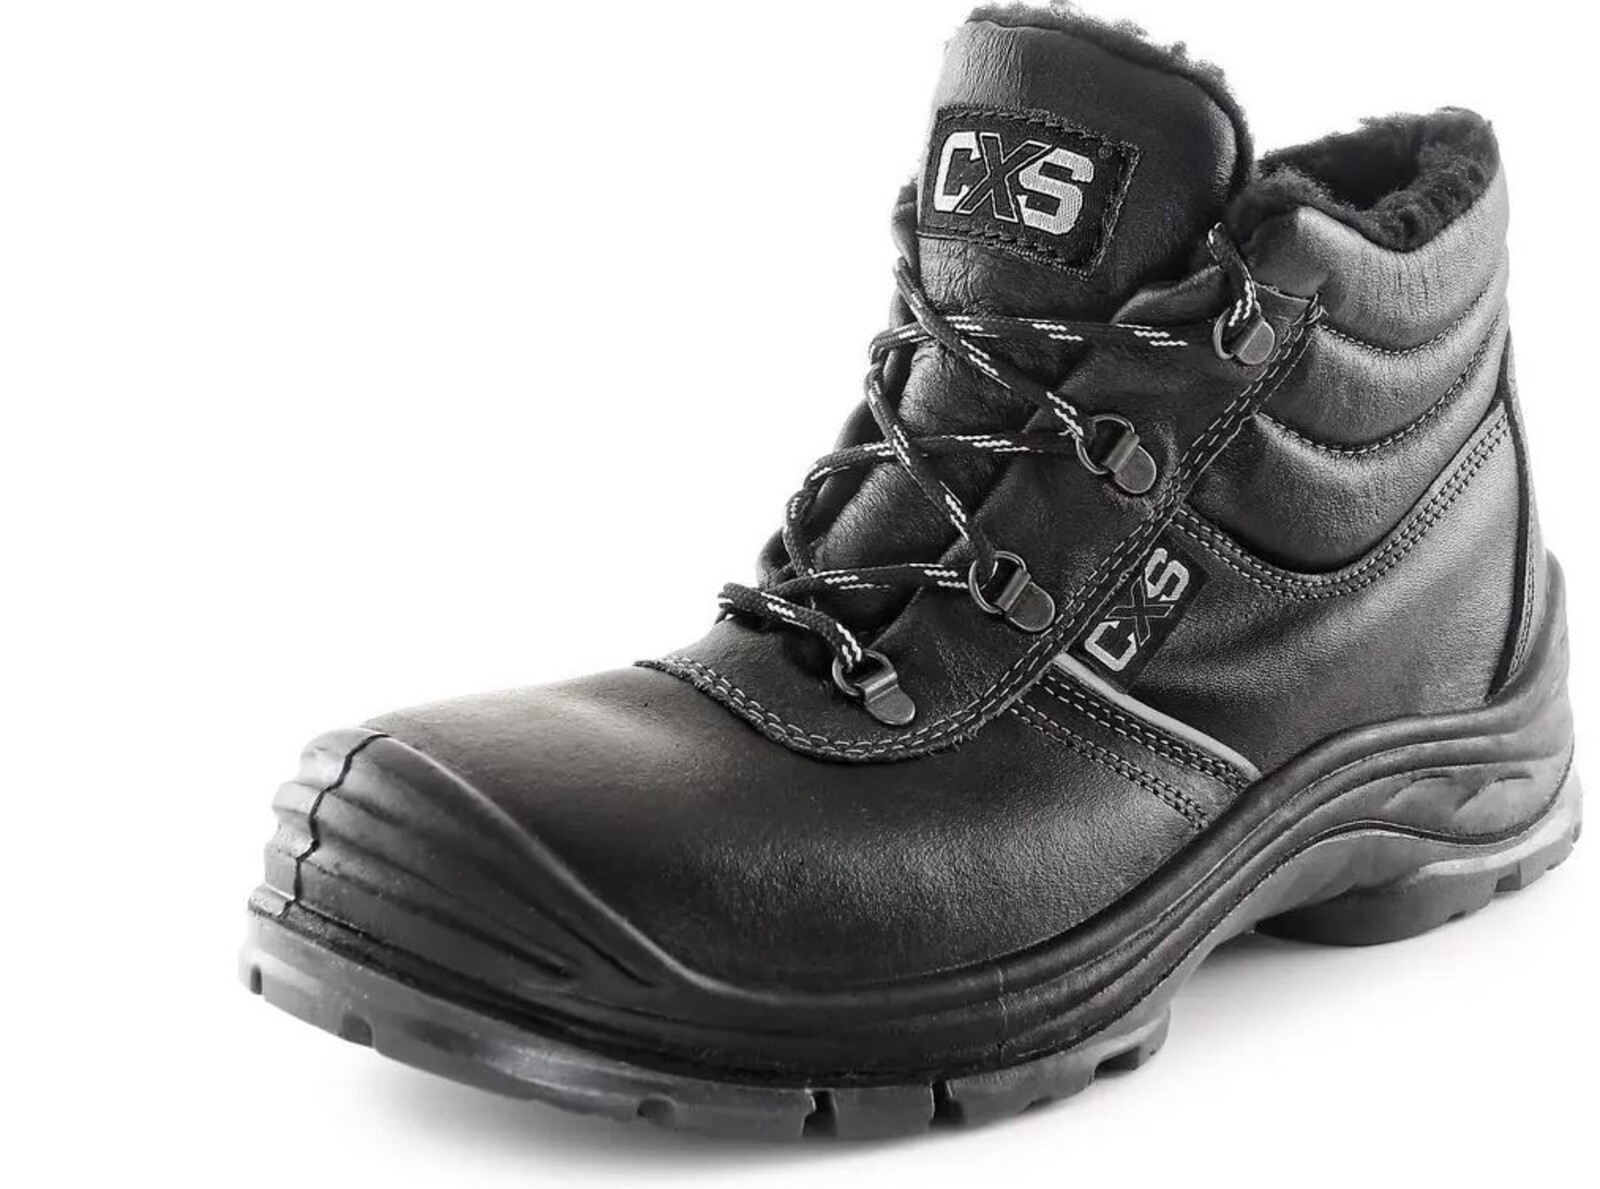 Zimná bezpečnostná členková obuv CXS Safety Steel Nickel S3 - veľkosť: 47, farba: čierna